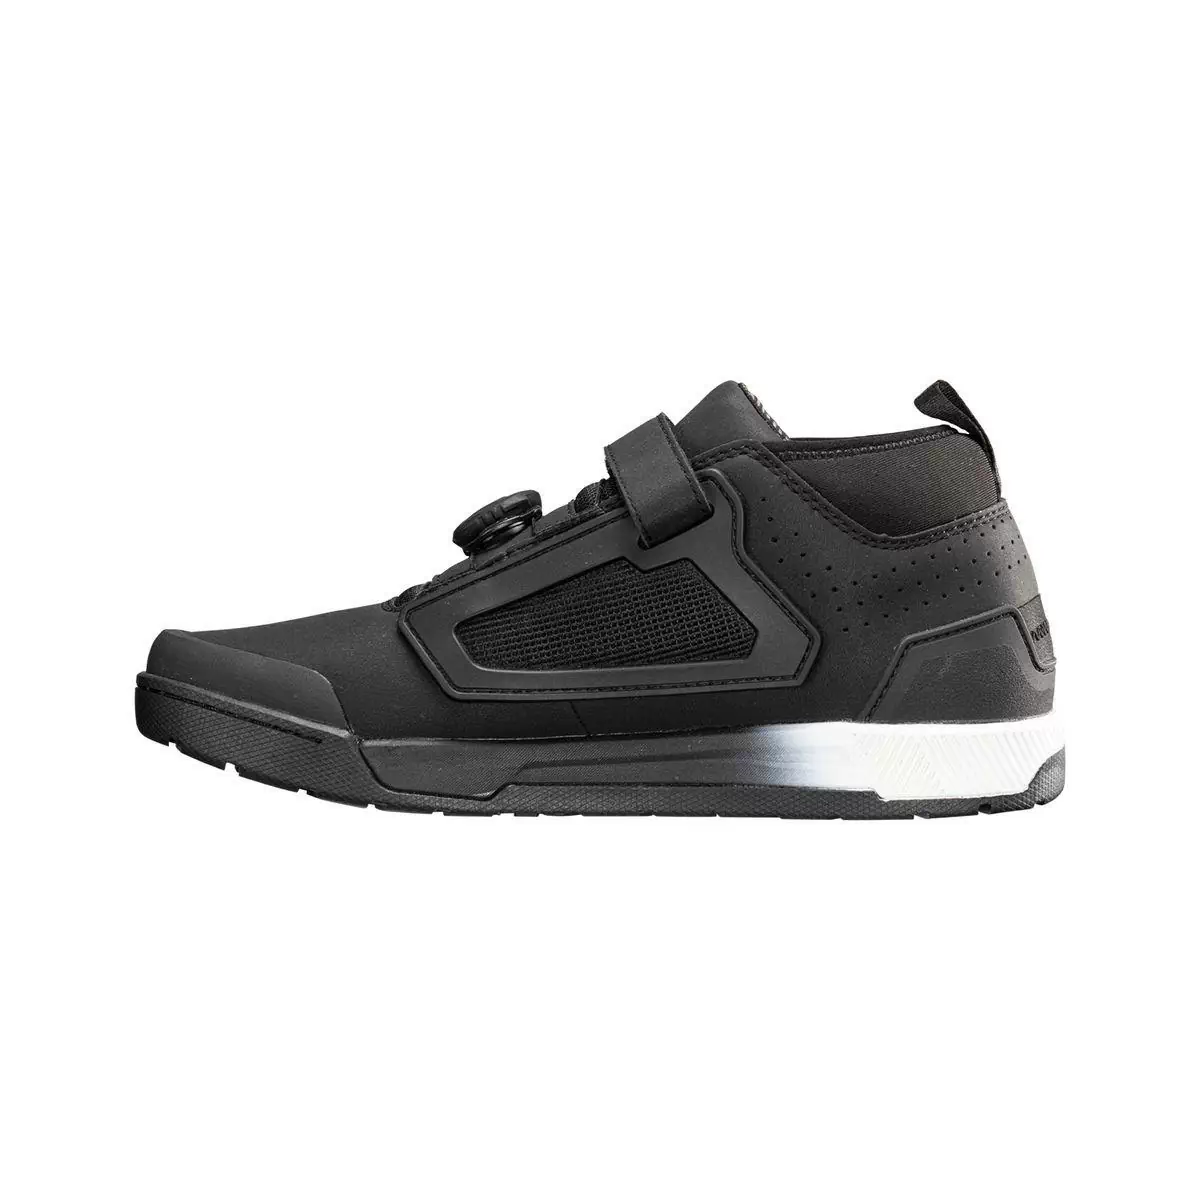 Chaussures VTT Pro Flat 3.0 noir taille 43 #1